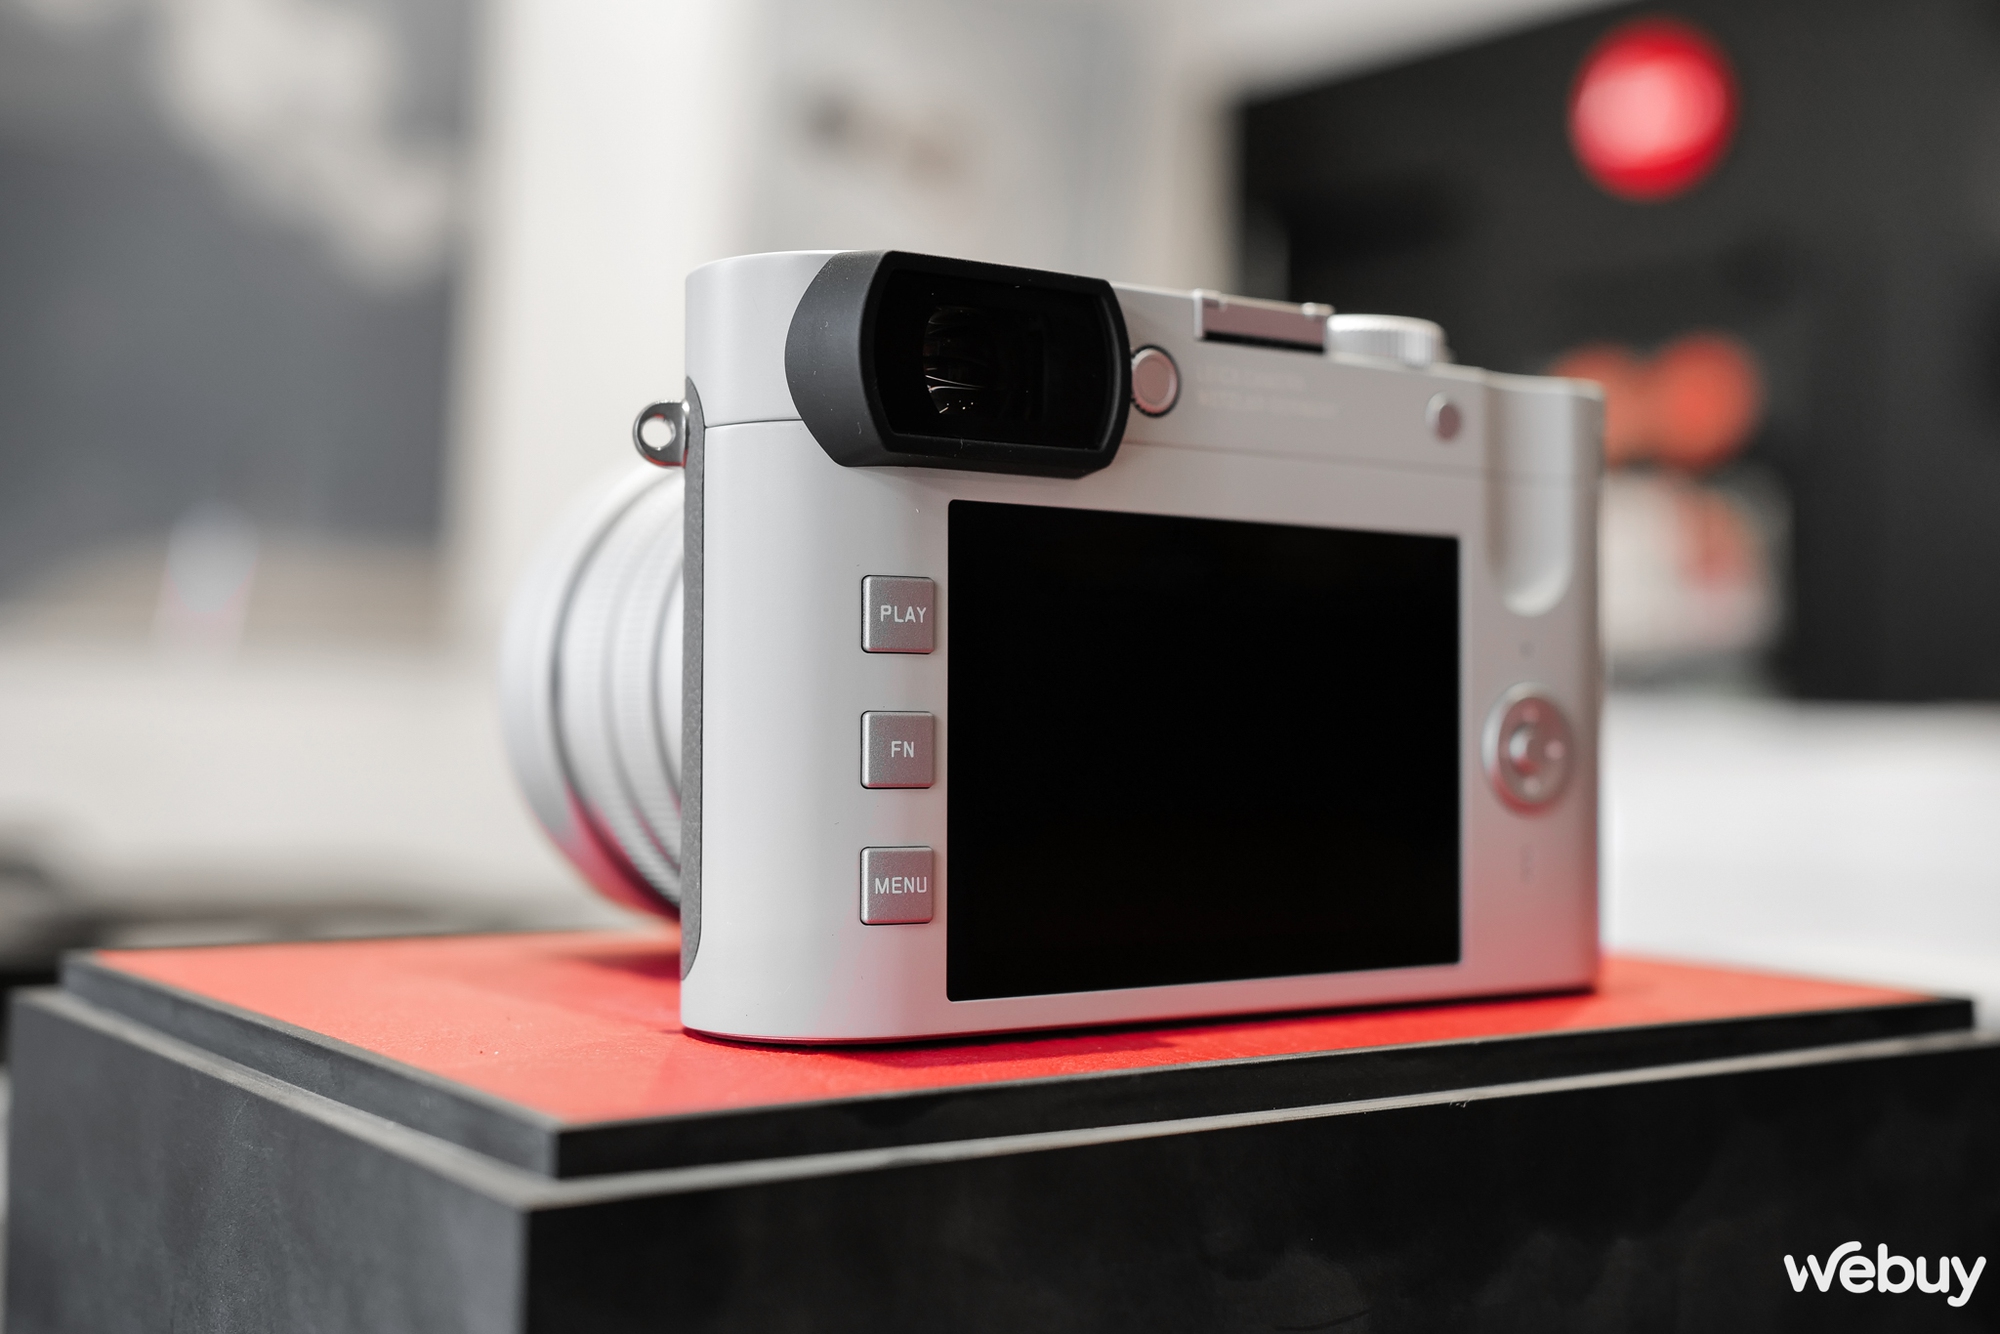 Mở hộp máy ảnh hạng sang Leica Q2 Ghost Edition: Màu xám xi măng, lấy ý tưởng từ đồng hồ Rolex hiếm - Ảnh 14.